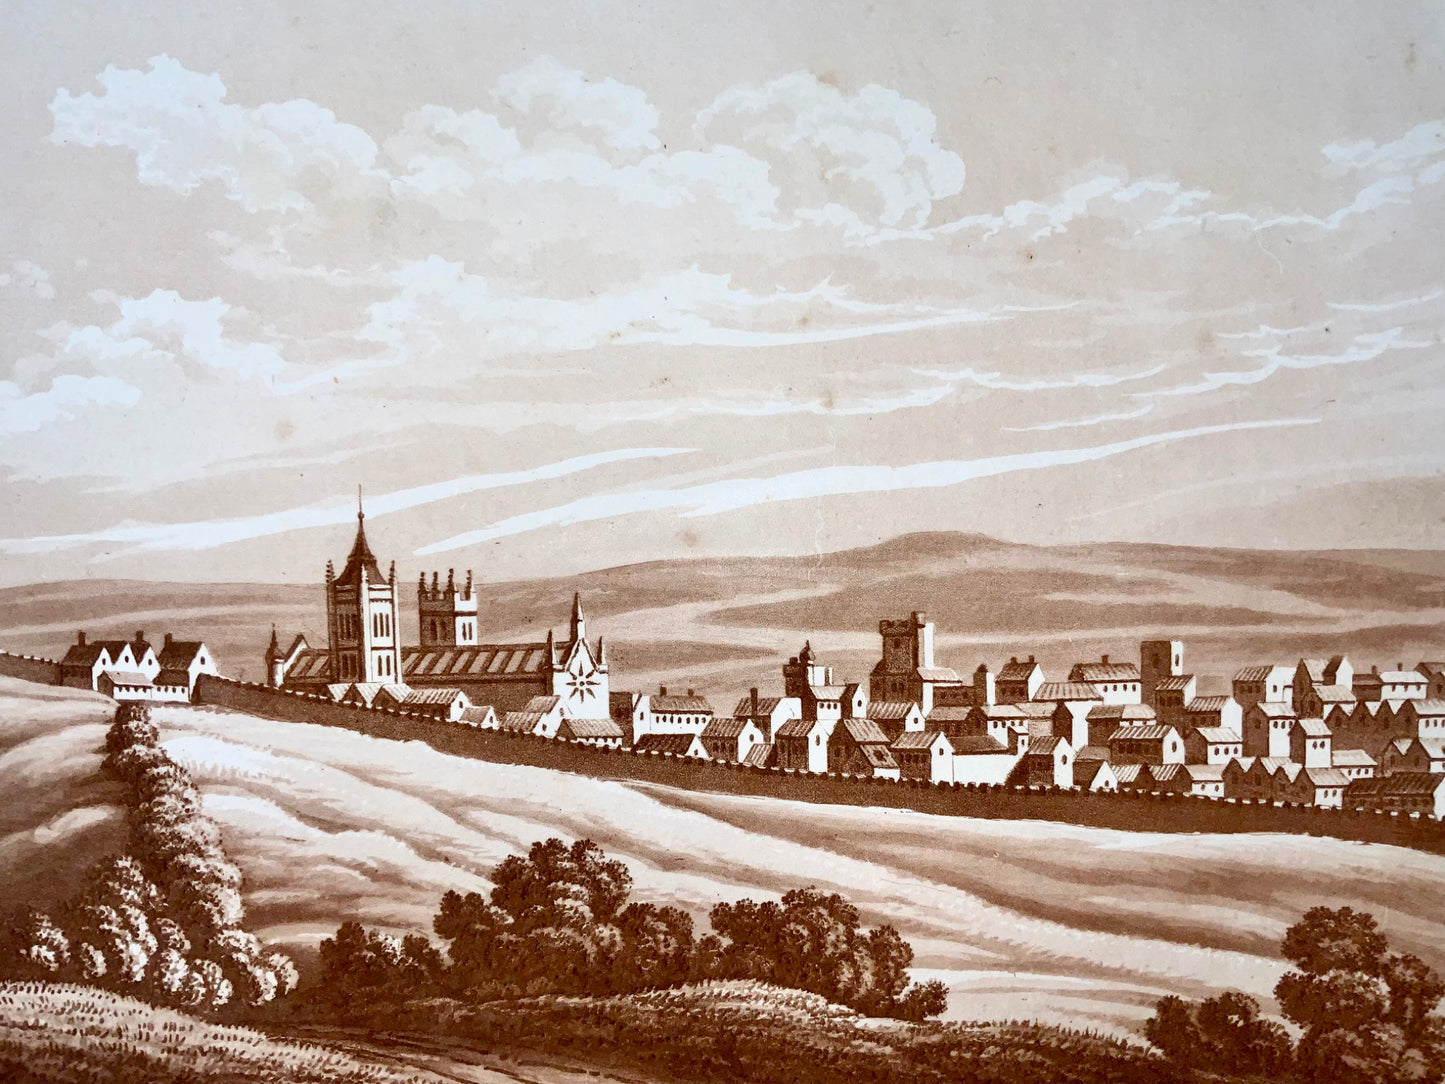 1821 Exeter, Devon, acquatinta seppia, Mawman da Shepherd, topografia